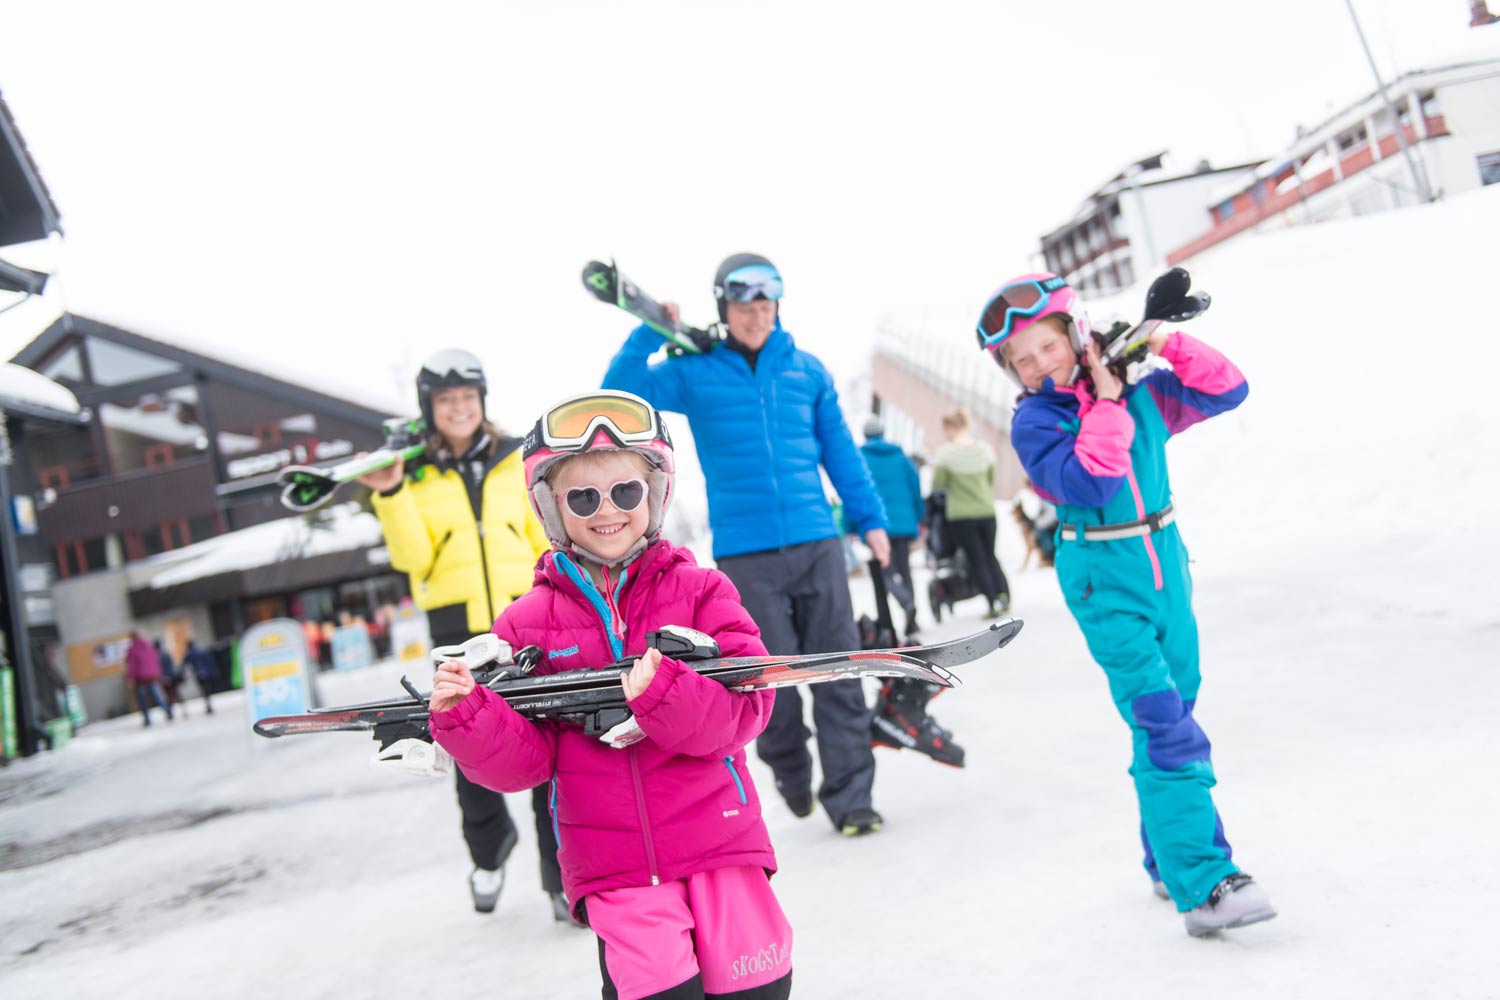 Met kinderen op wintersport in Noorwegen